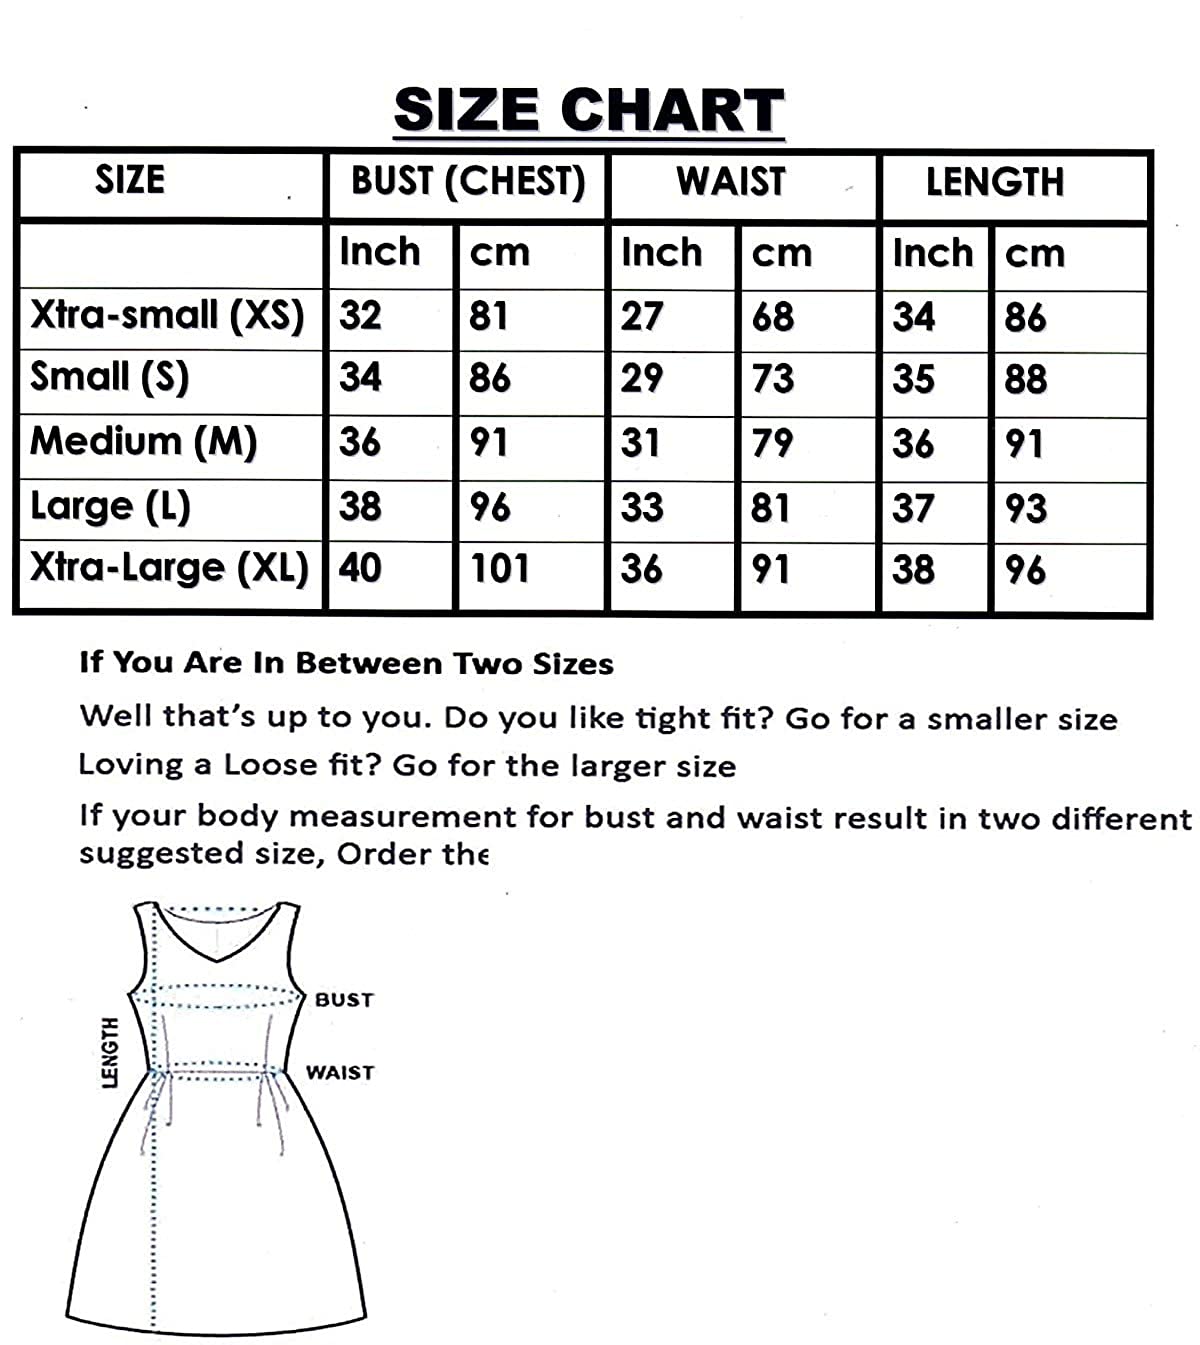 Shruhad® Women’s Knee Length Dress -  Dresses in Sri Lanka from Arcade Online Shopping - Just Rs. 4999!